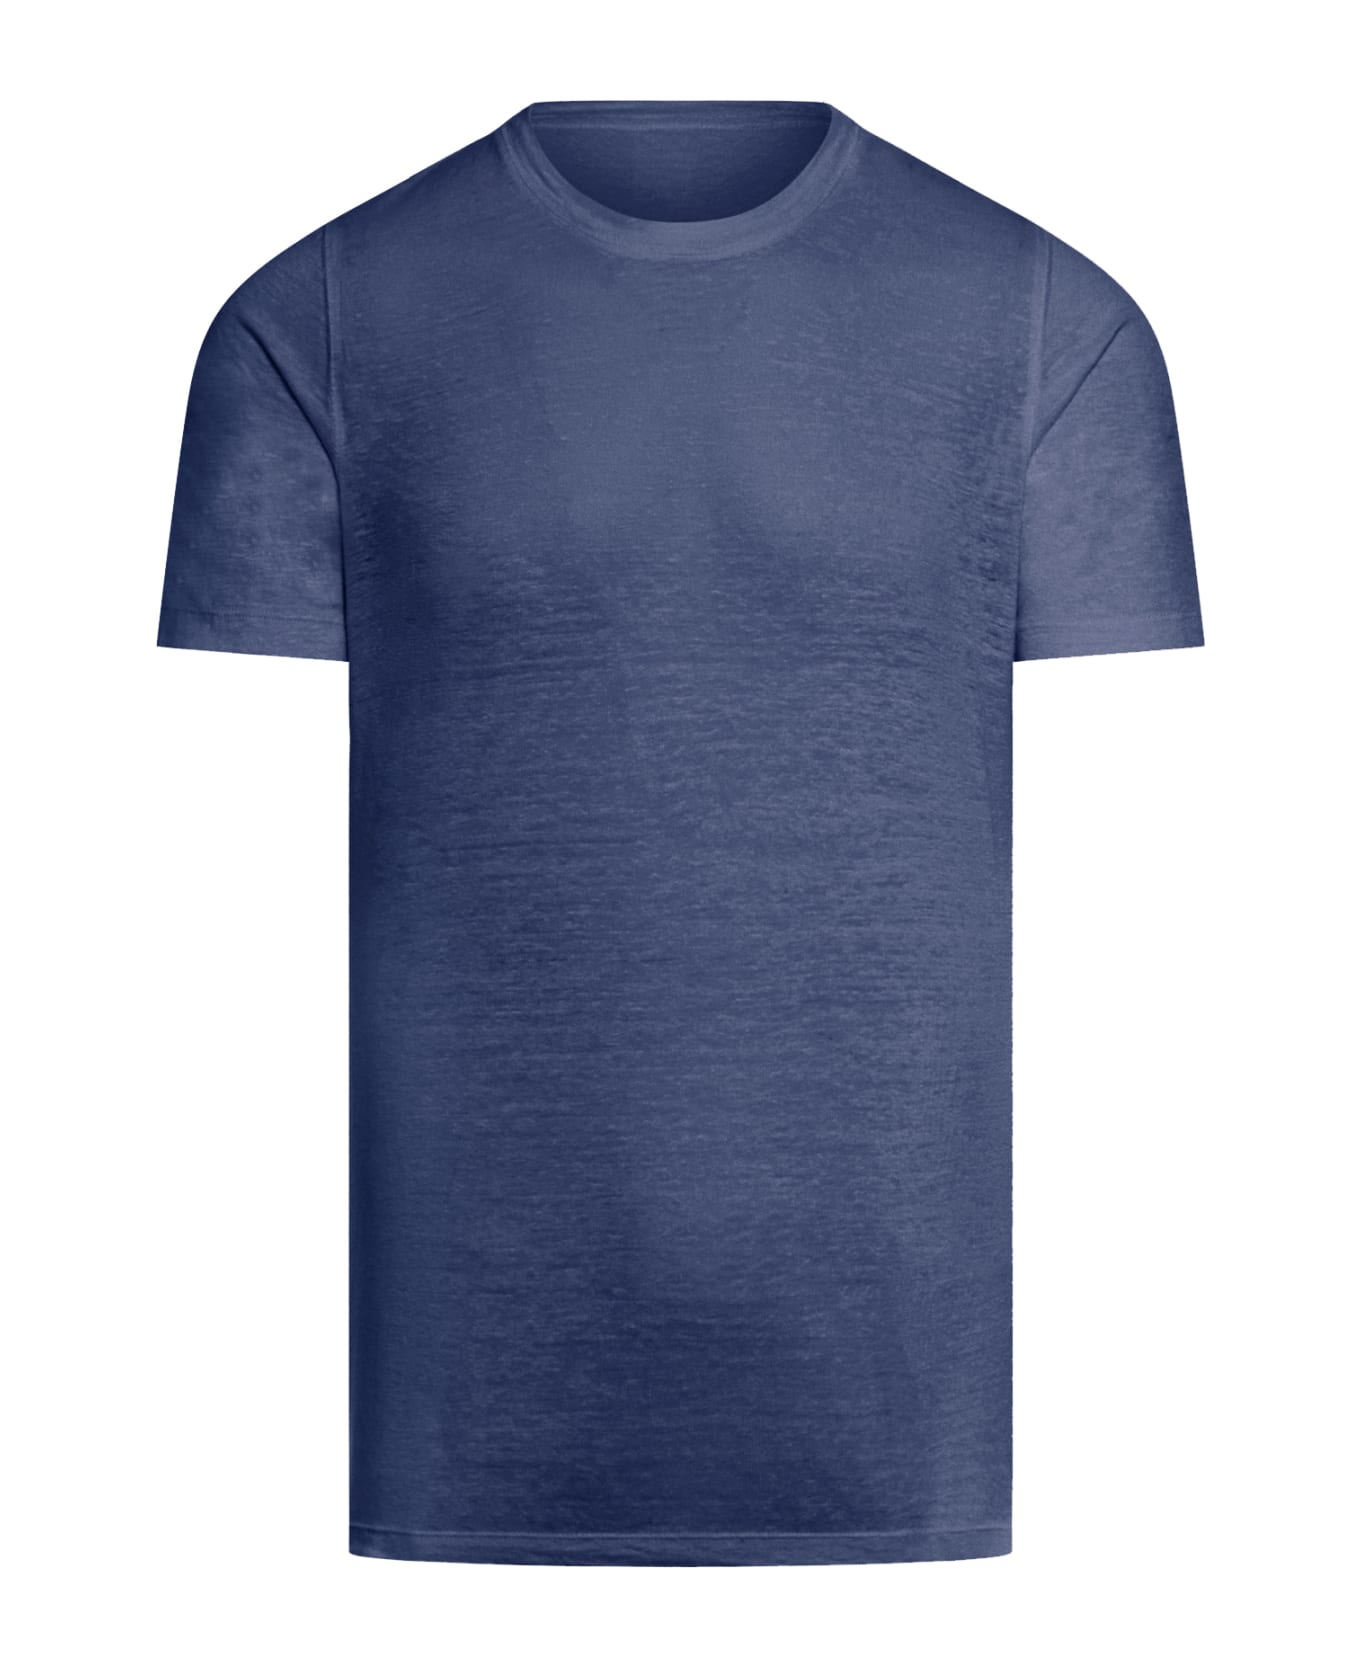 120% Lino Short Sleeve Men Tshirt - F Navy Blue シャツ